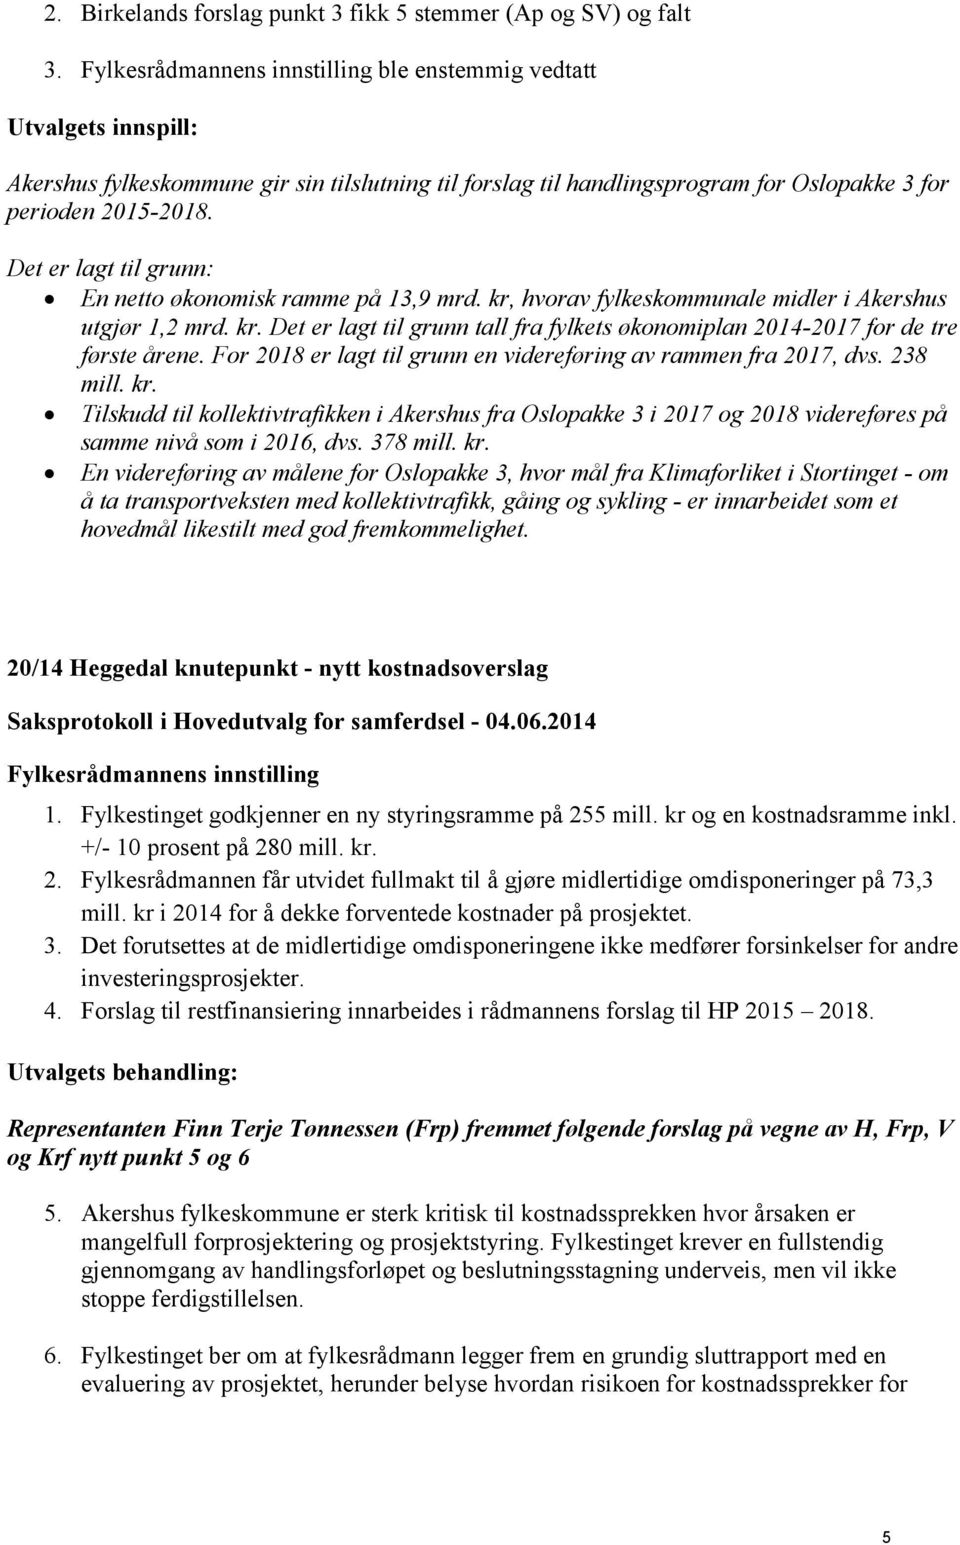 Det er lagt til grunn: En netto økonomisk ramme på 13,9 mrd. kr, hvorav fylkeskommunale midler i Akershus utgjør 1,2 mrd. kr. Det er lagt til grunn tall fra fylkets økonomiplan 2014-2017 for de tre første årene.